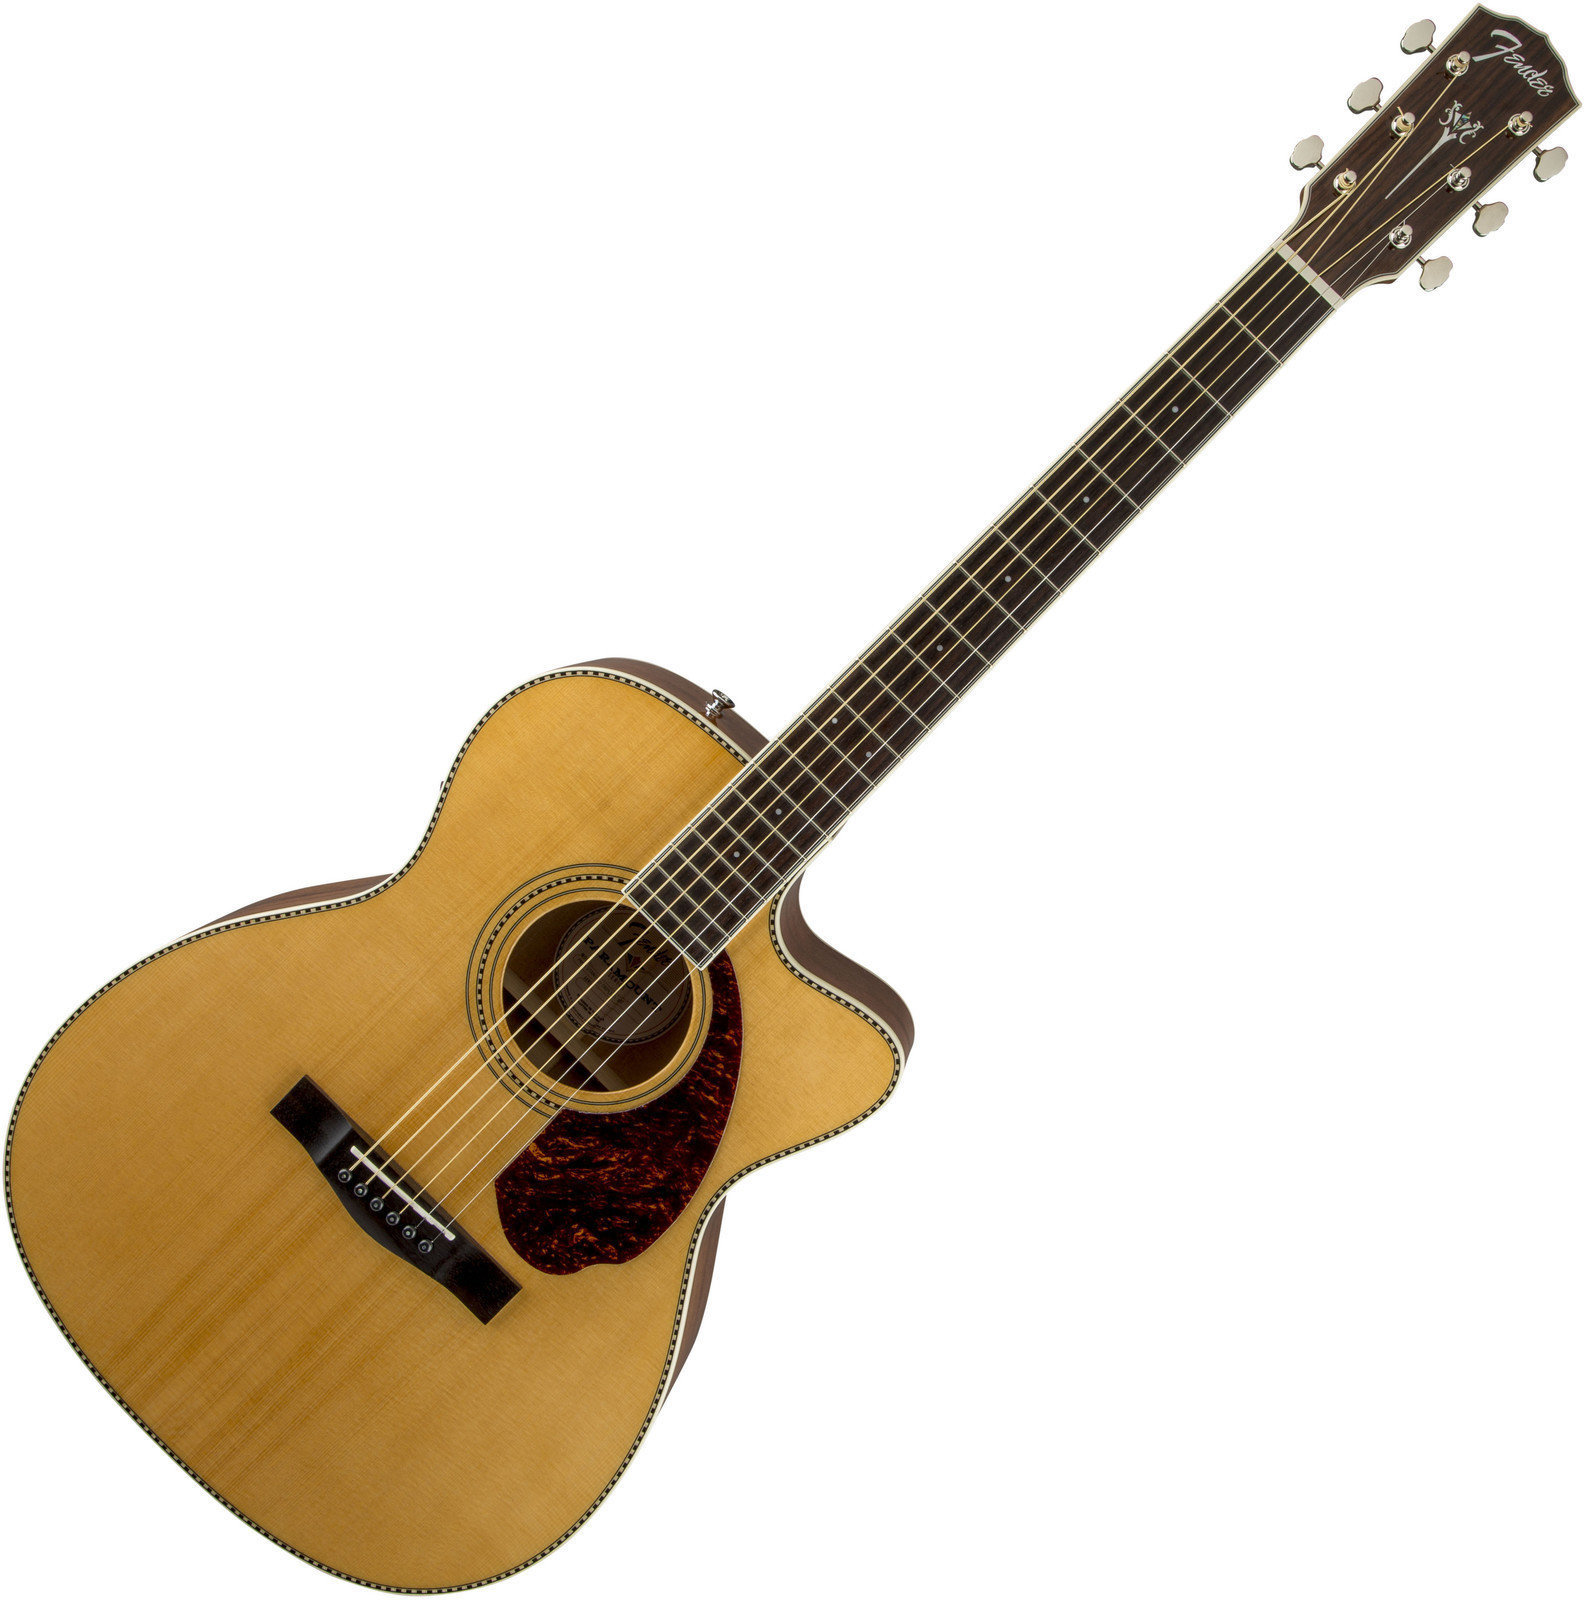 Ηλεκτροακουστική Κιθάρα Fender PM-3 Standard Triple 0, Natural